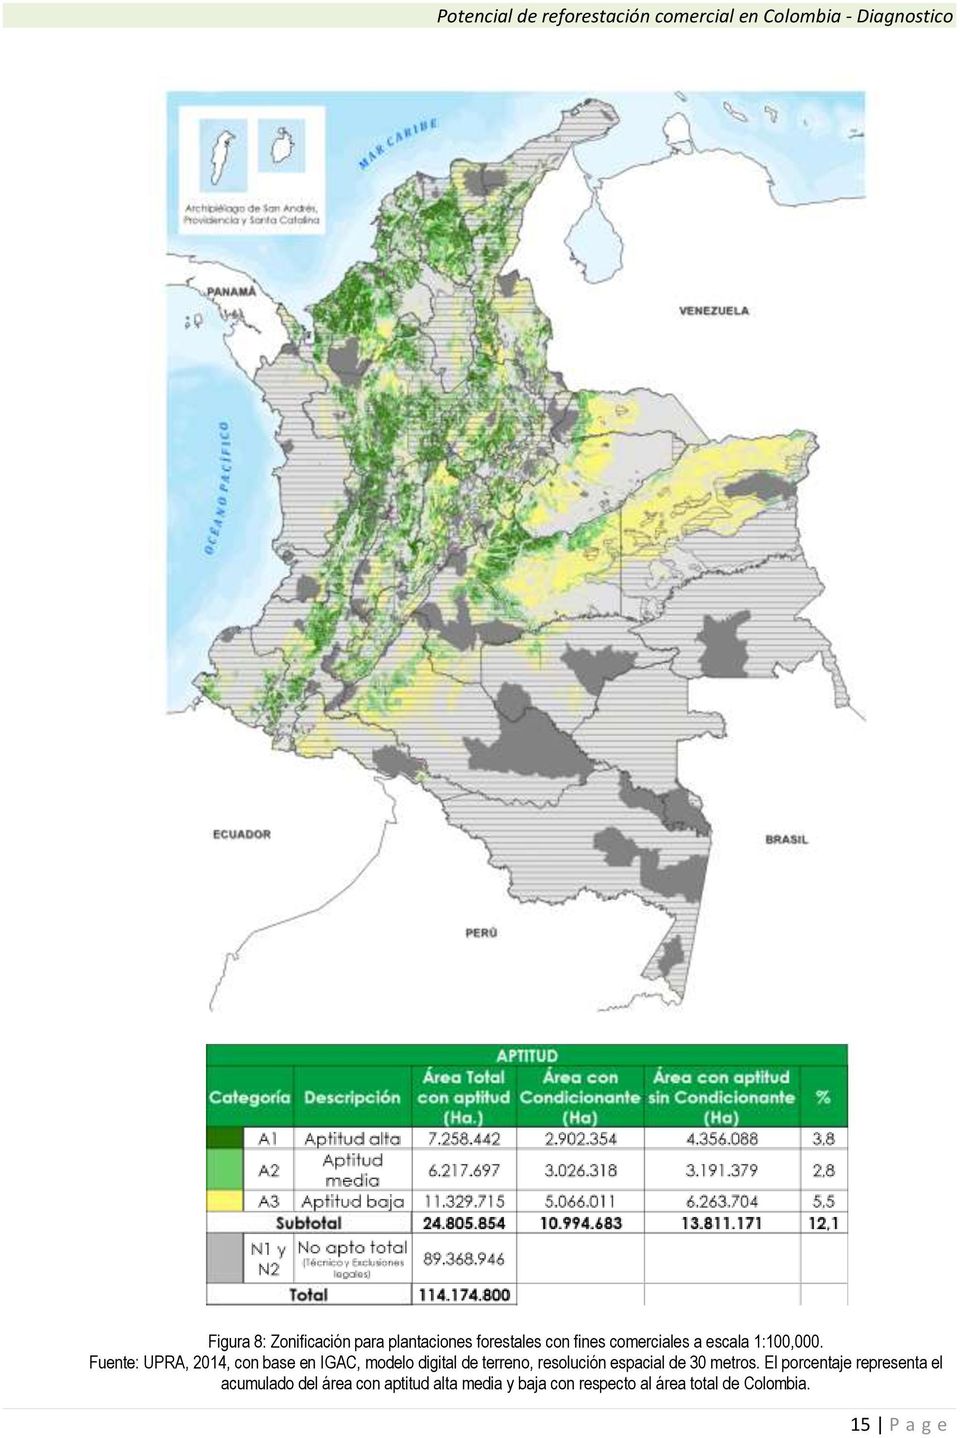 Fuente: UPRA, 2014, con base en IGAC, modelo digital de terreno, resolución